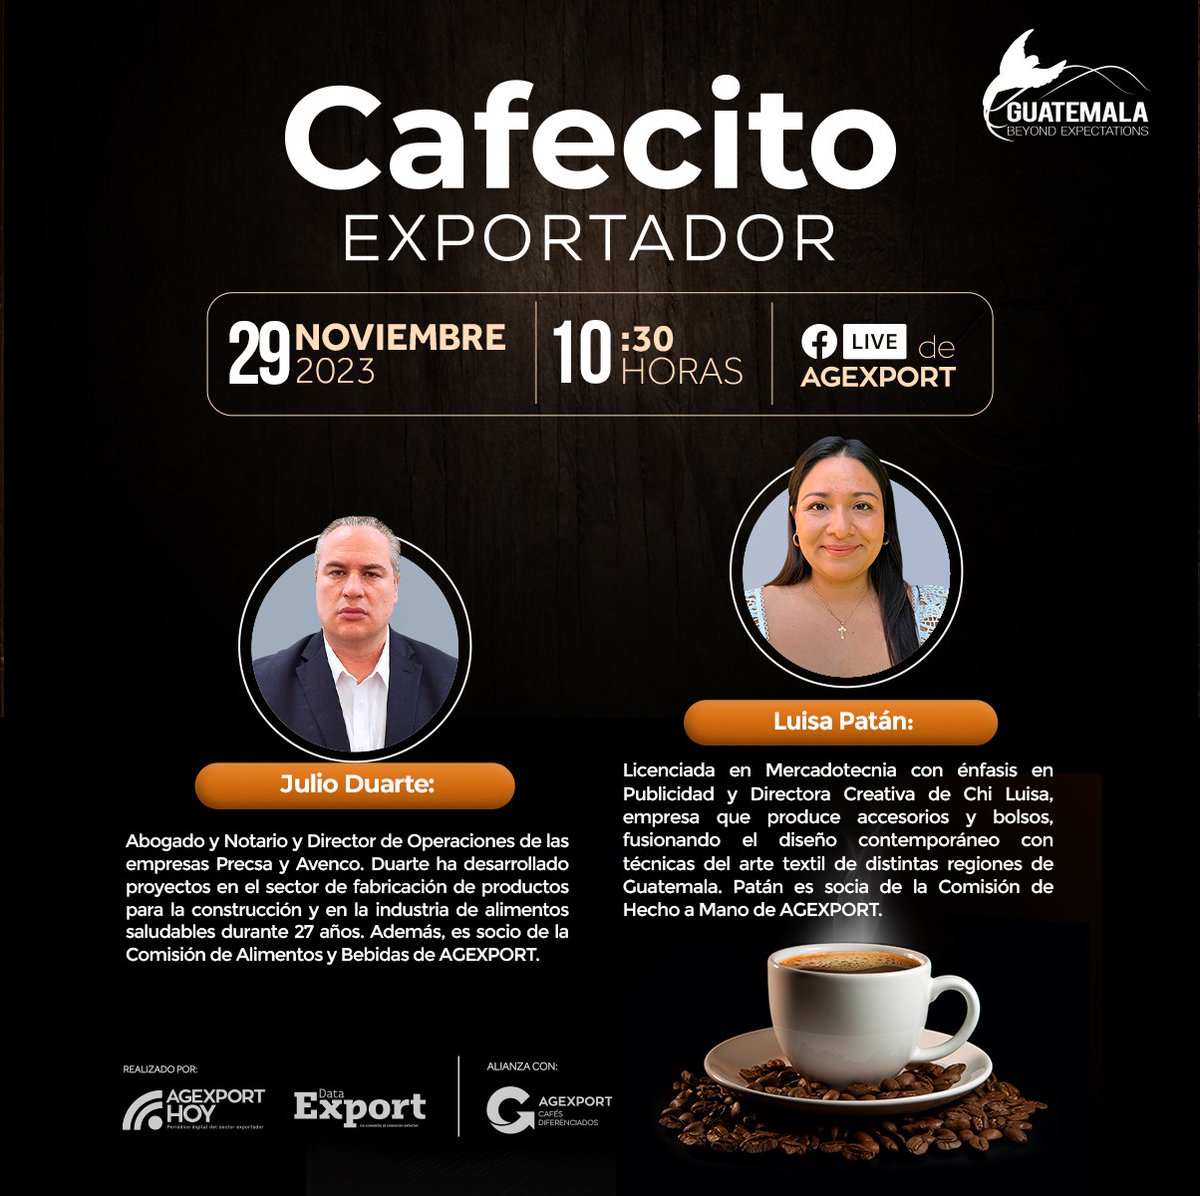 No se pierdan el #CafecitoExportador de @AGEXPORTGT  donde conoceremos el caso de éxito y de exportación de las empresas Precsa, Avenco y ChiLuisa. 
#ExportacionesGt @NotiAgexport @handmadegt